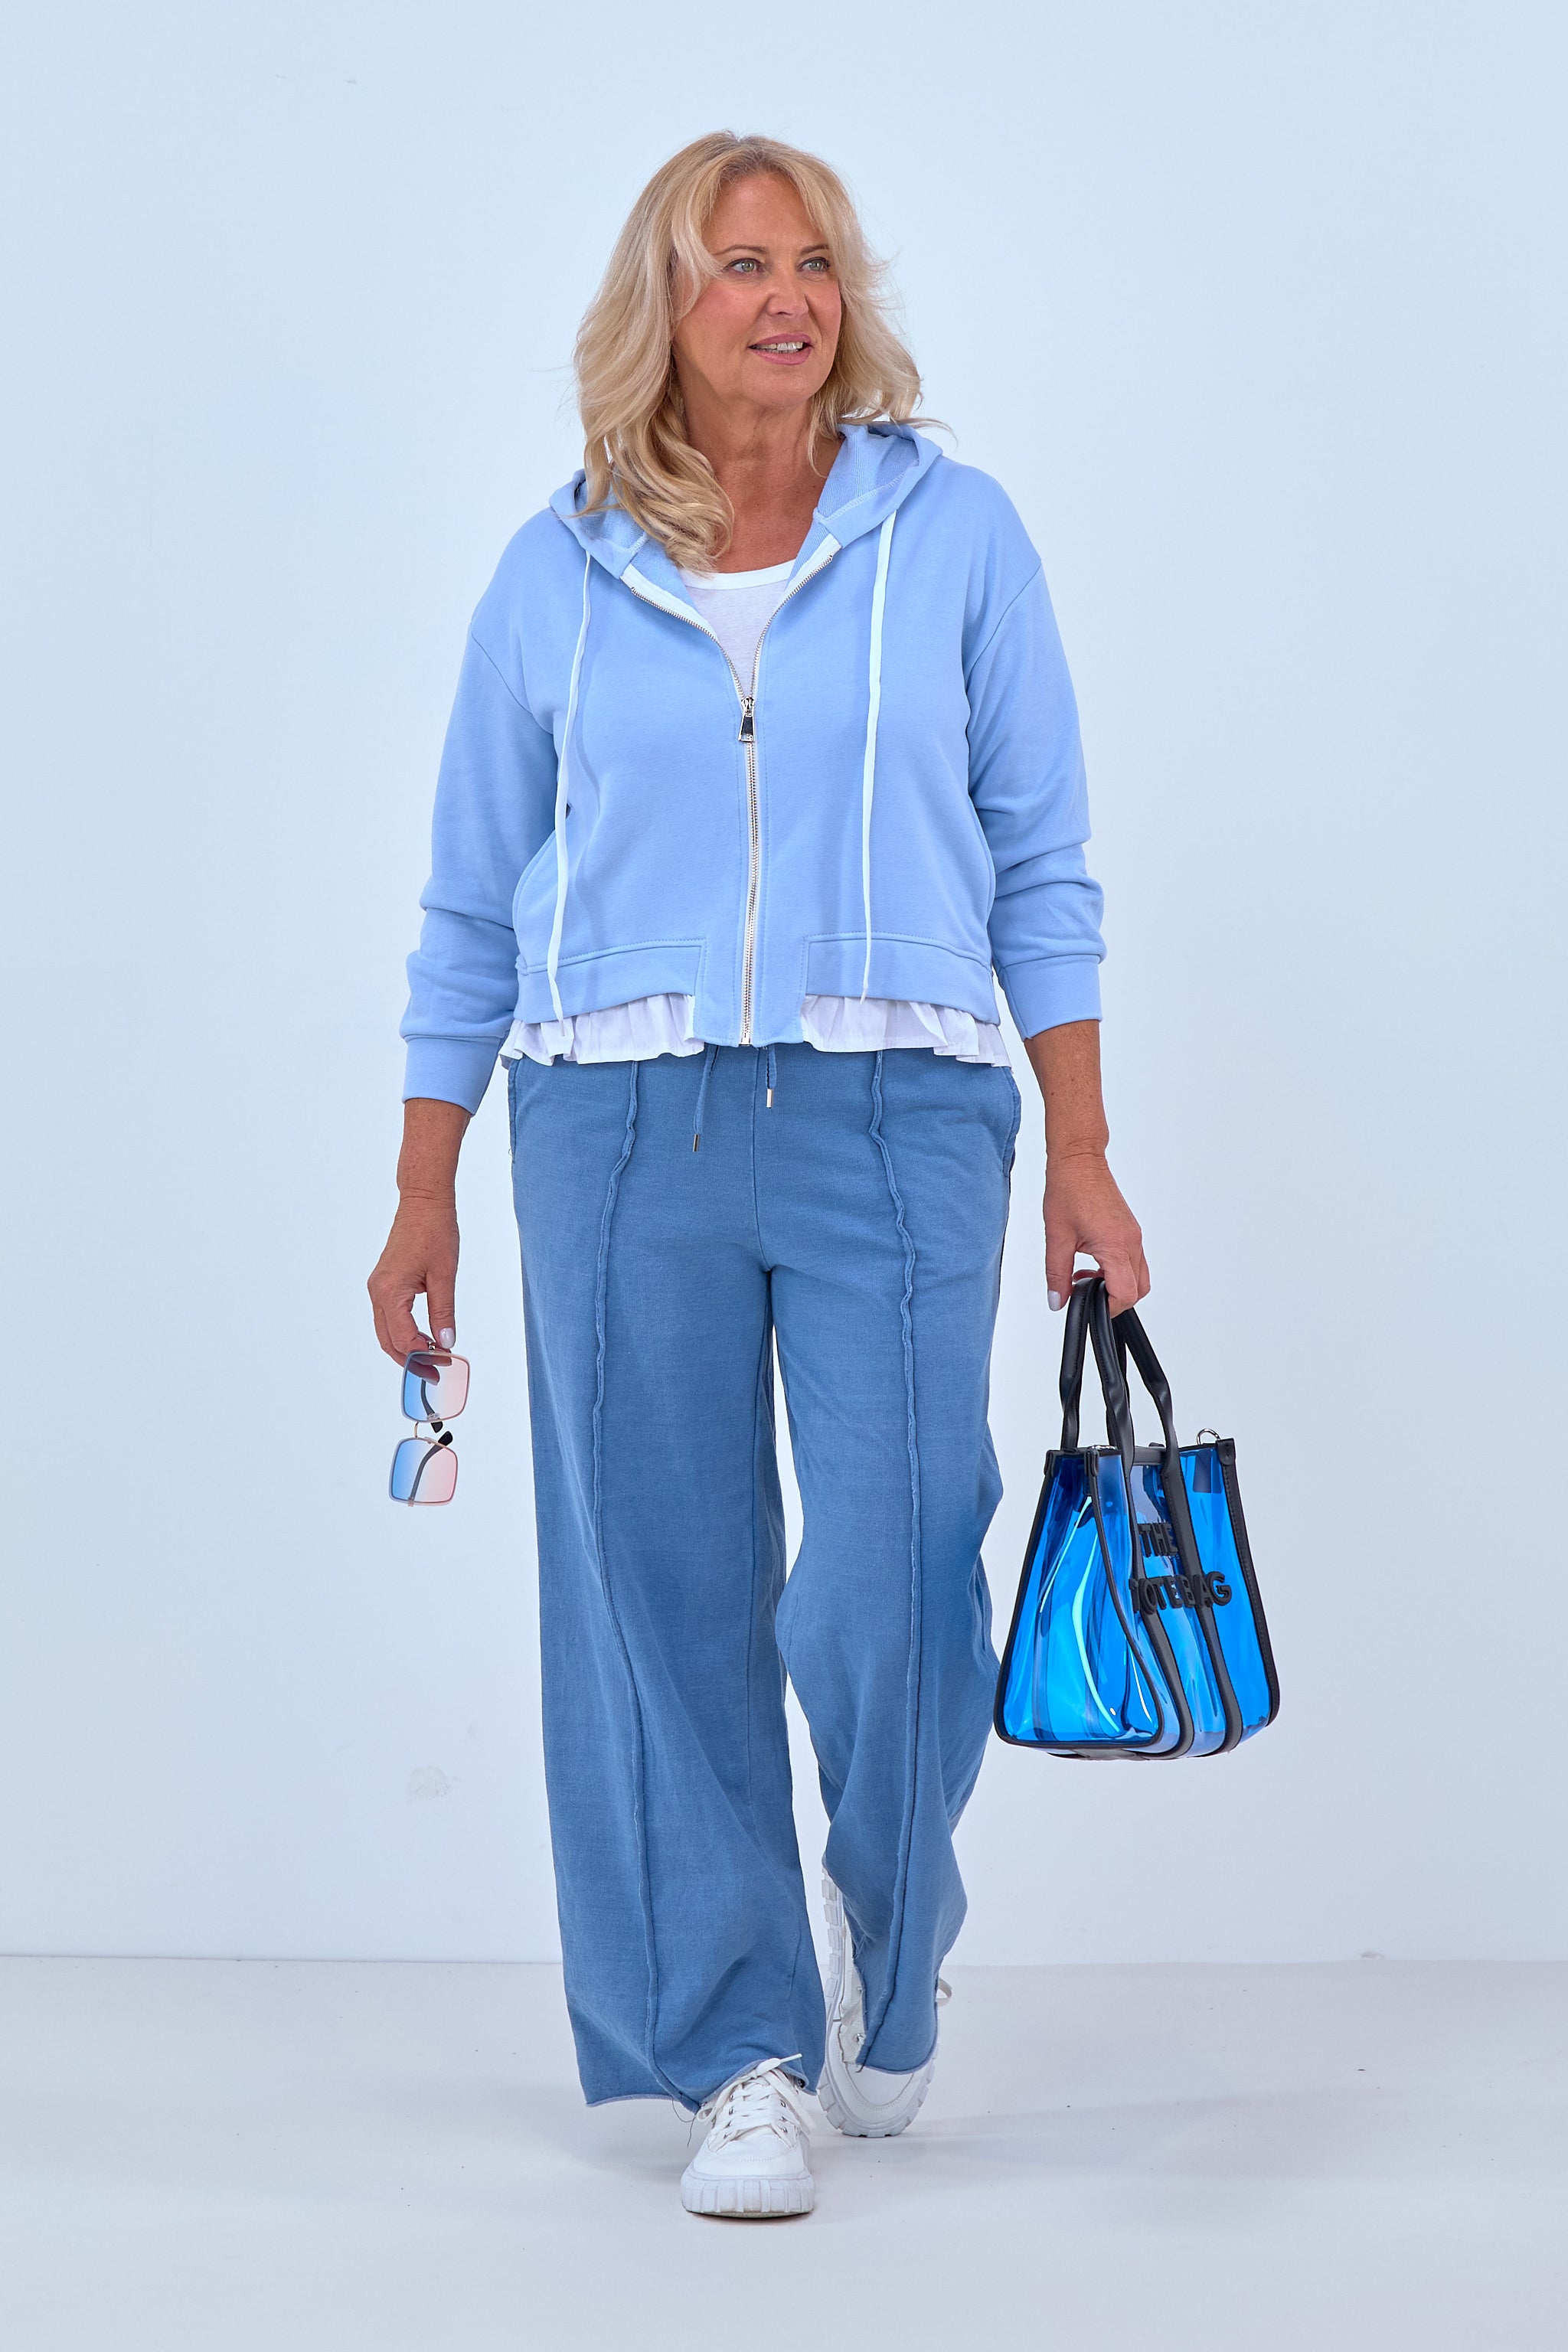 Damen Hoodie Jacke blau Trends & Lifestyle Deutschland GmbH